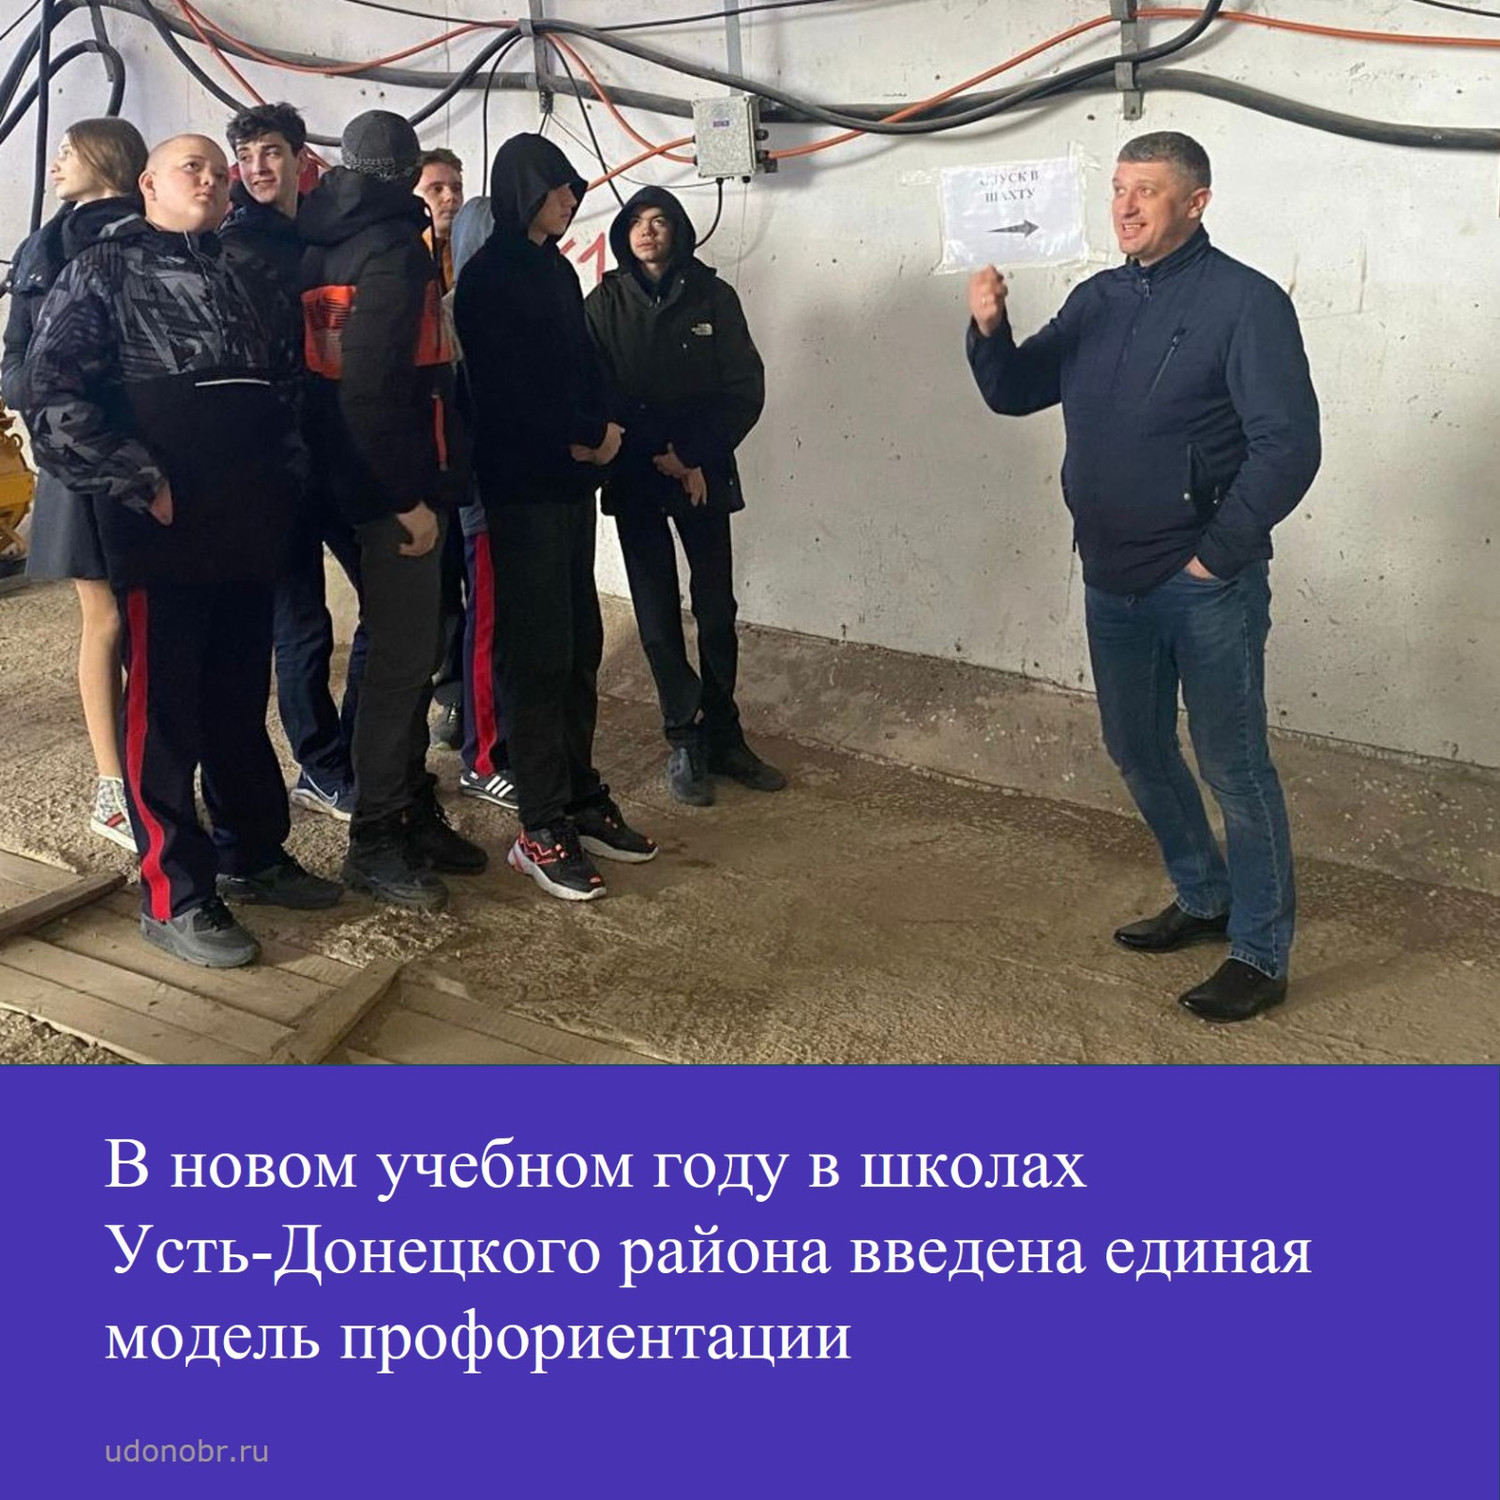 В новом учебном году в школах Усть-Донецкого района введена единая модель профориентации